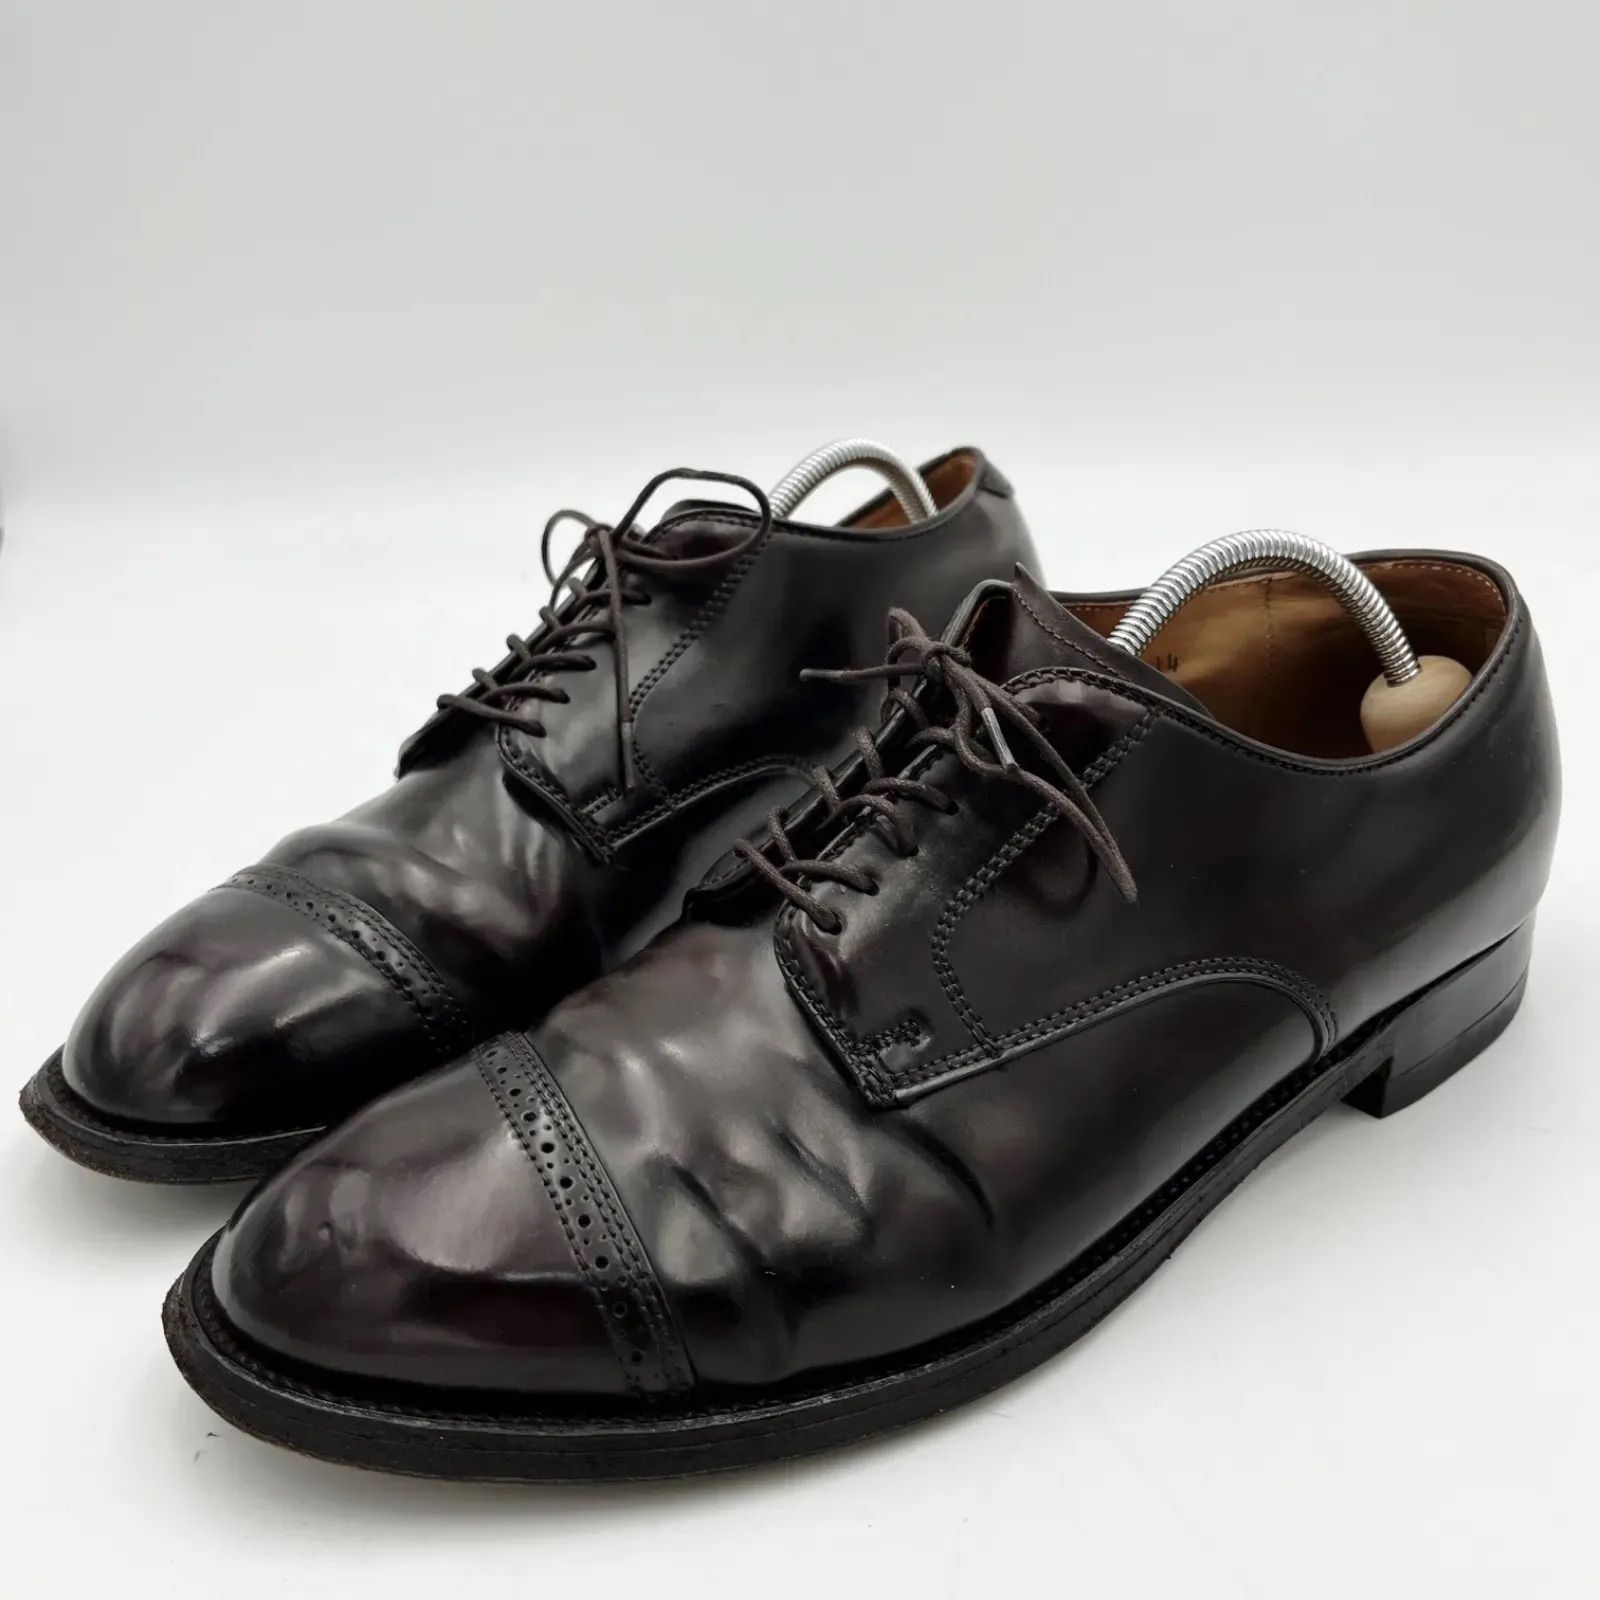 Alden ALDEN オールデン ｵｰﾙﾃﾞﾝ 56201 コードバン メンズ シューズ バーガンディ 8.5 約26.5cm パンチドキャップトゥ  モディファイドラスト ドレスシューズ バーガンディ 革靴 靴 SM-34 - メルカリ